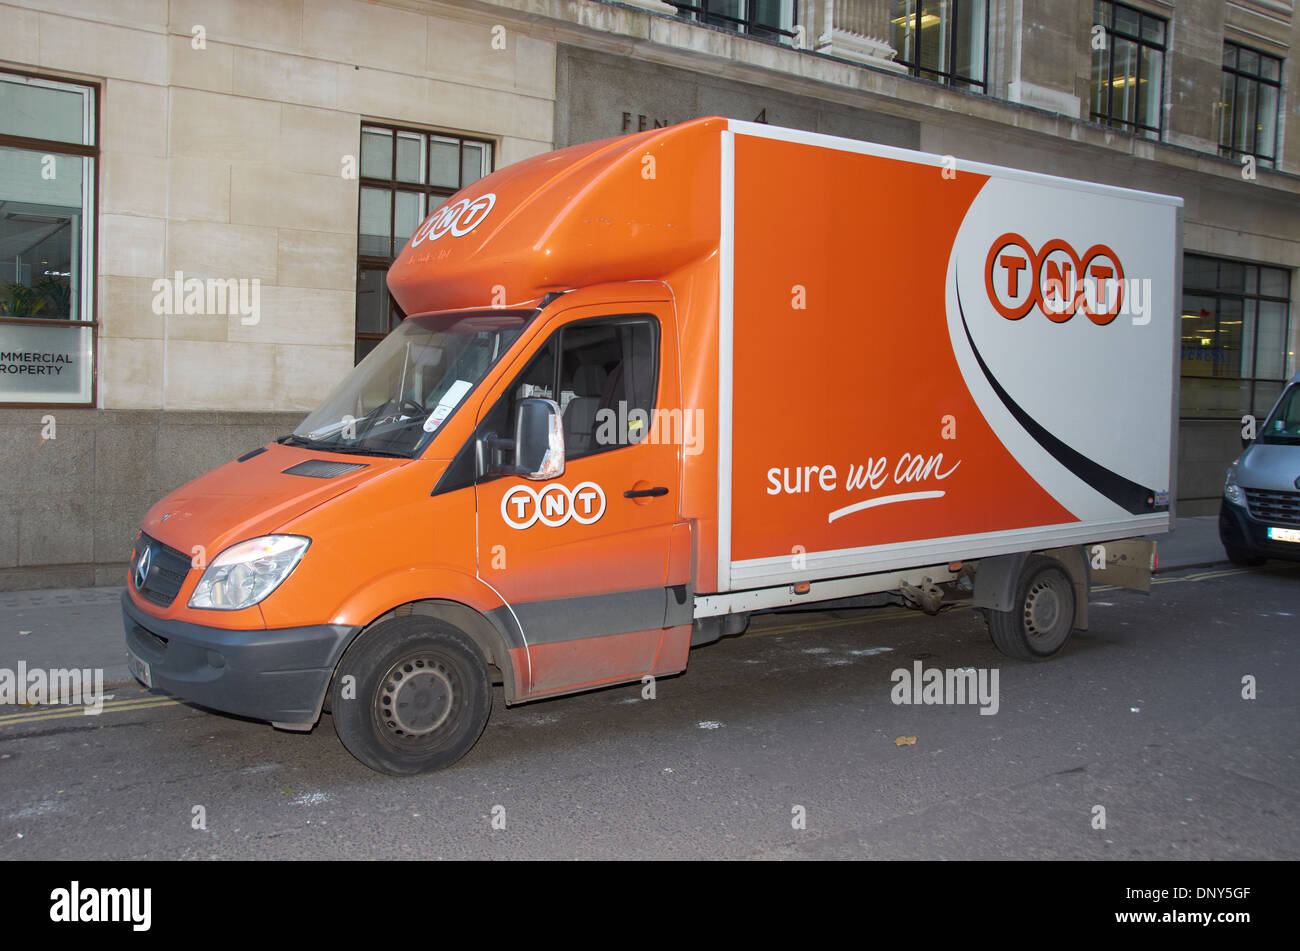 Livraison TNT van sur une rue de ville de Londres. Banque D'Images